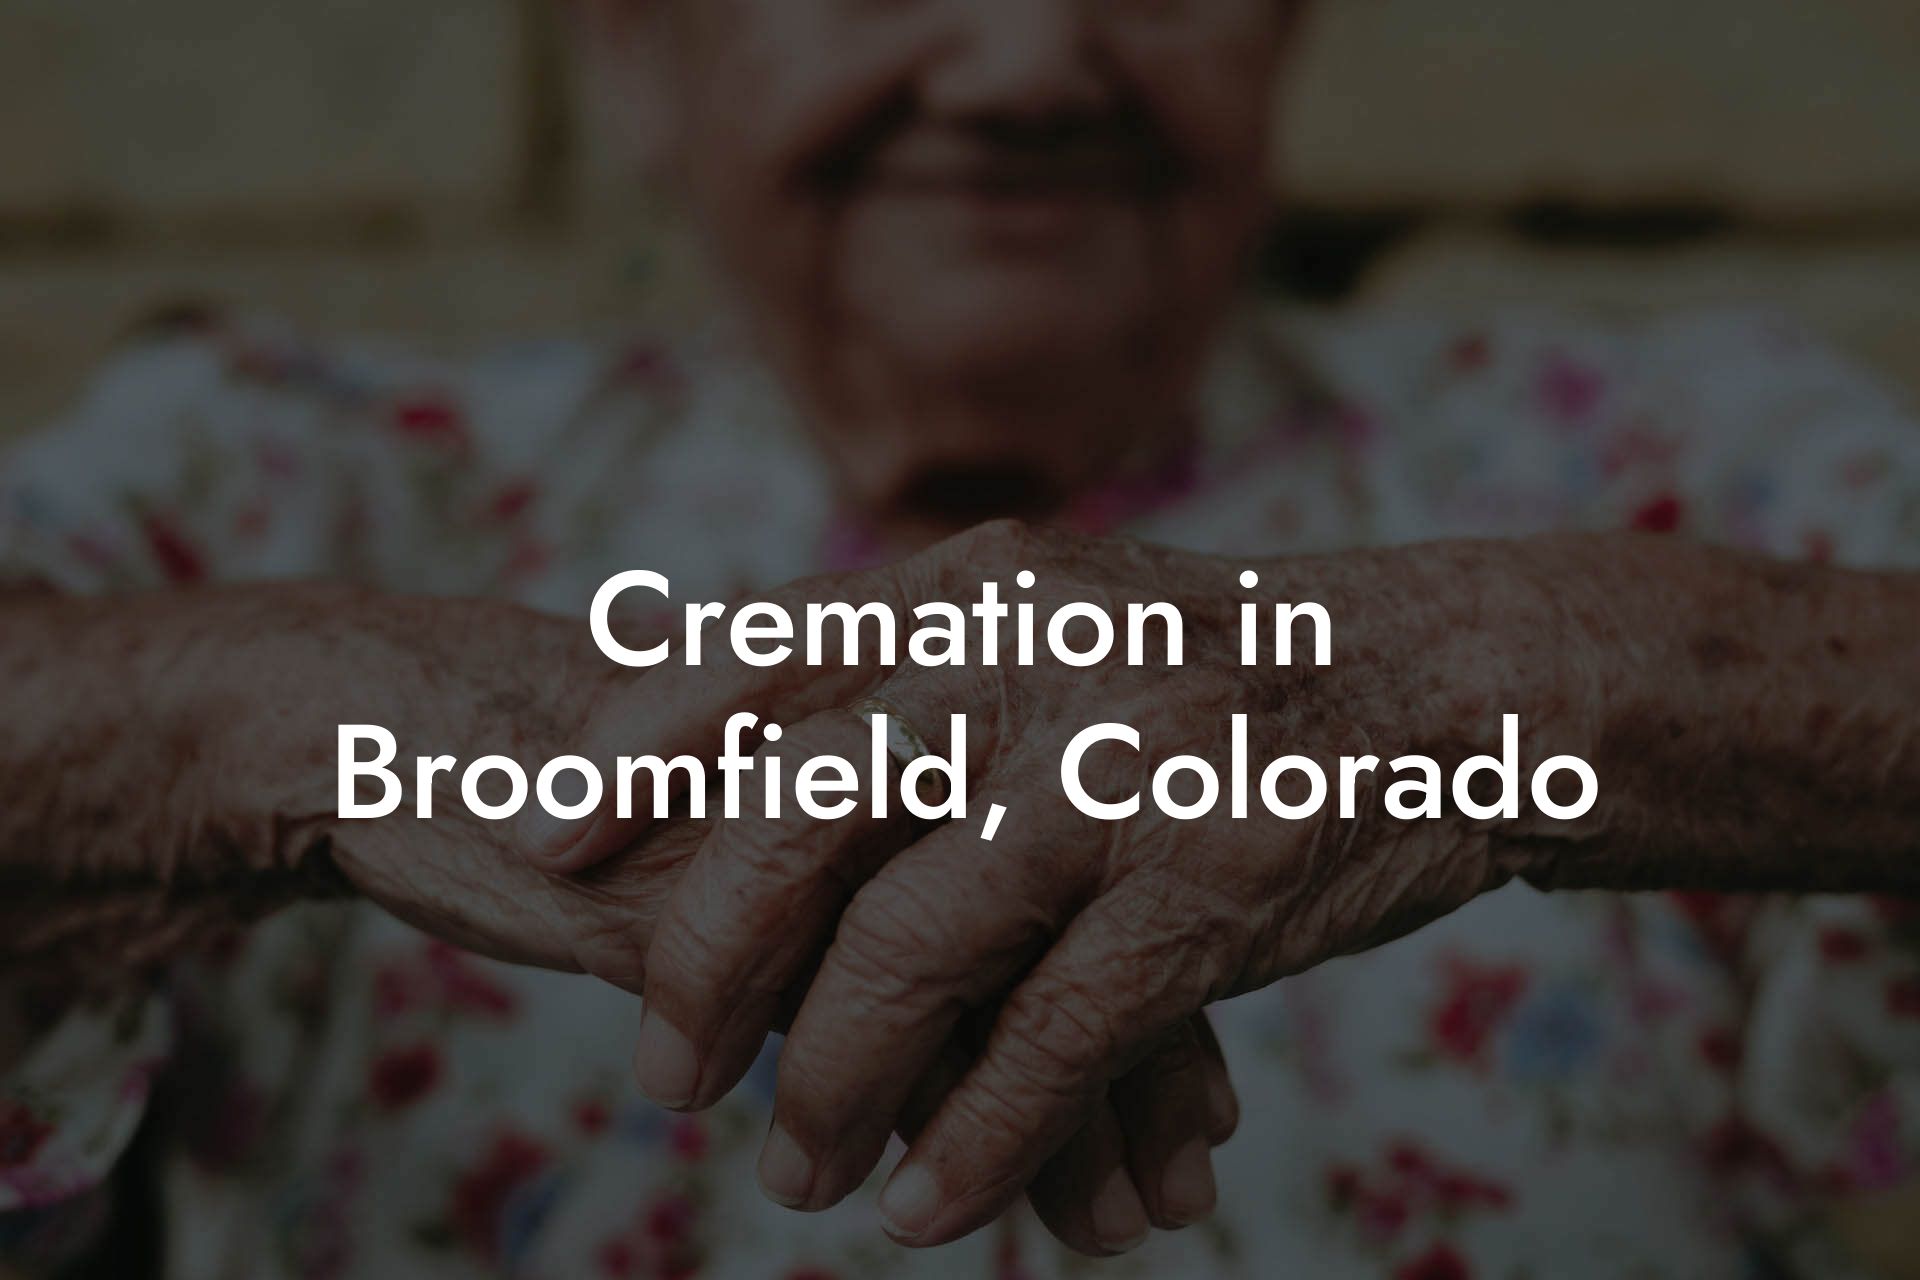 Cremation in Broomfield, Colorado